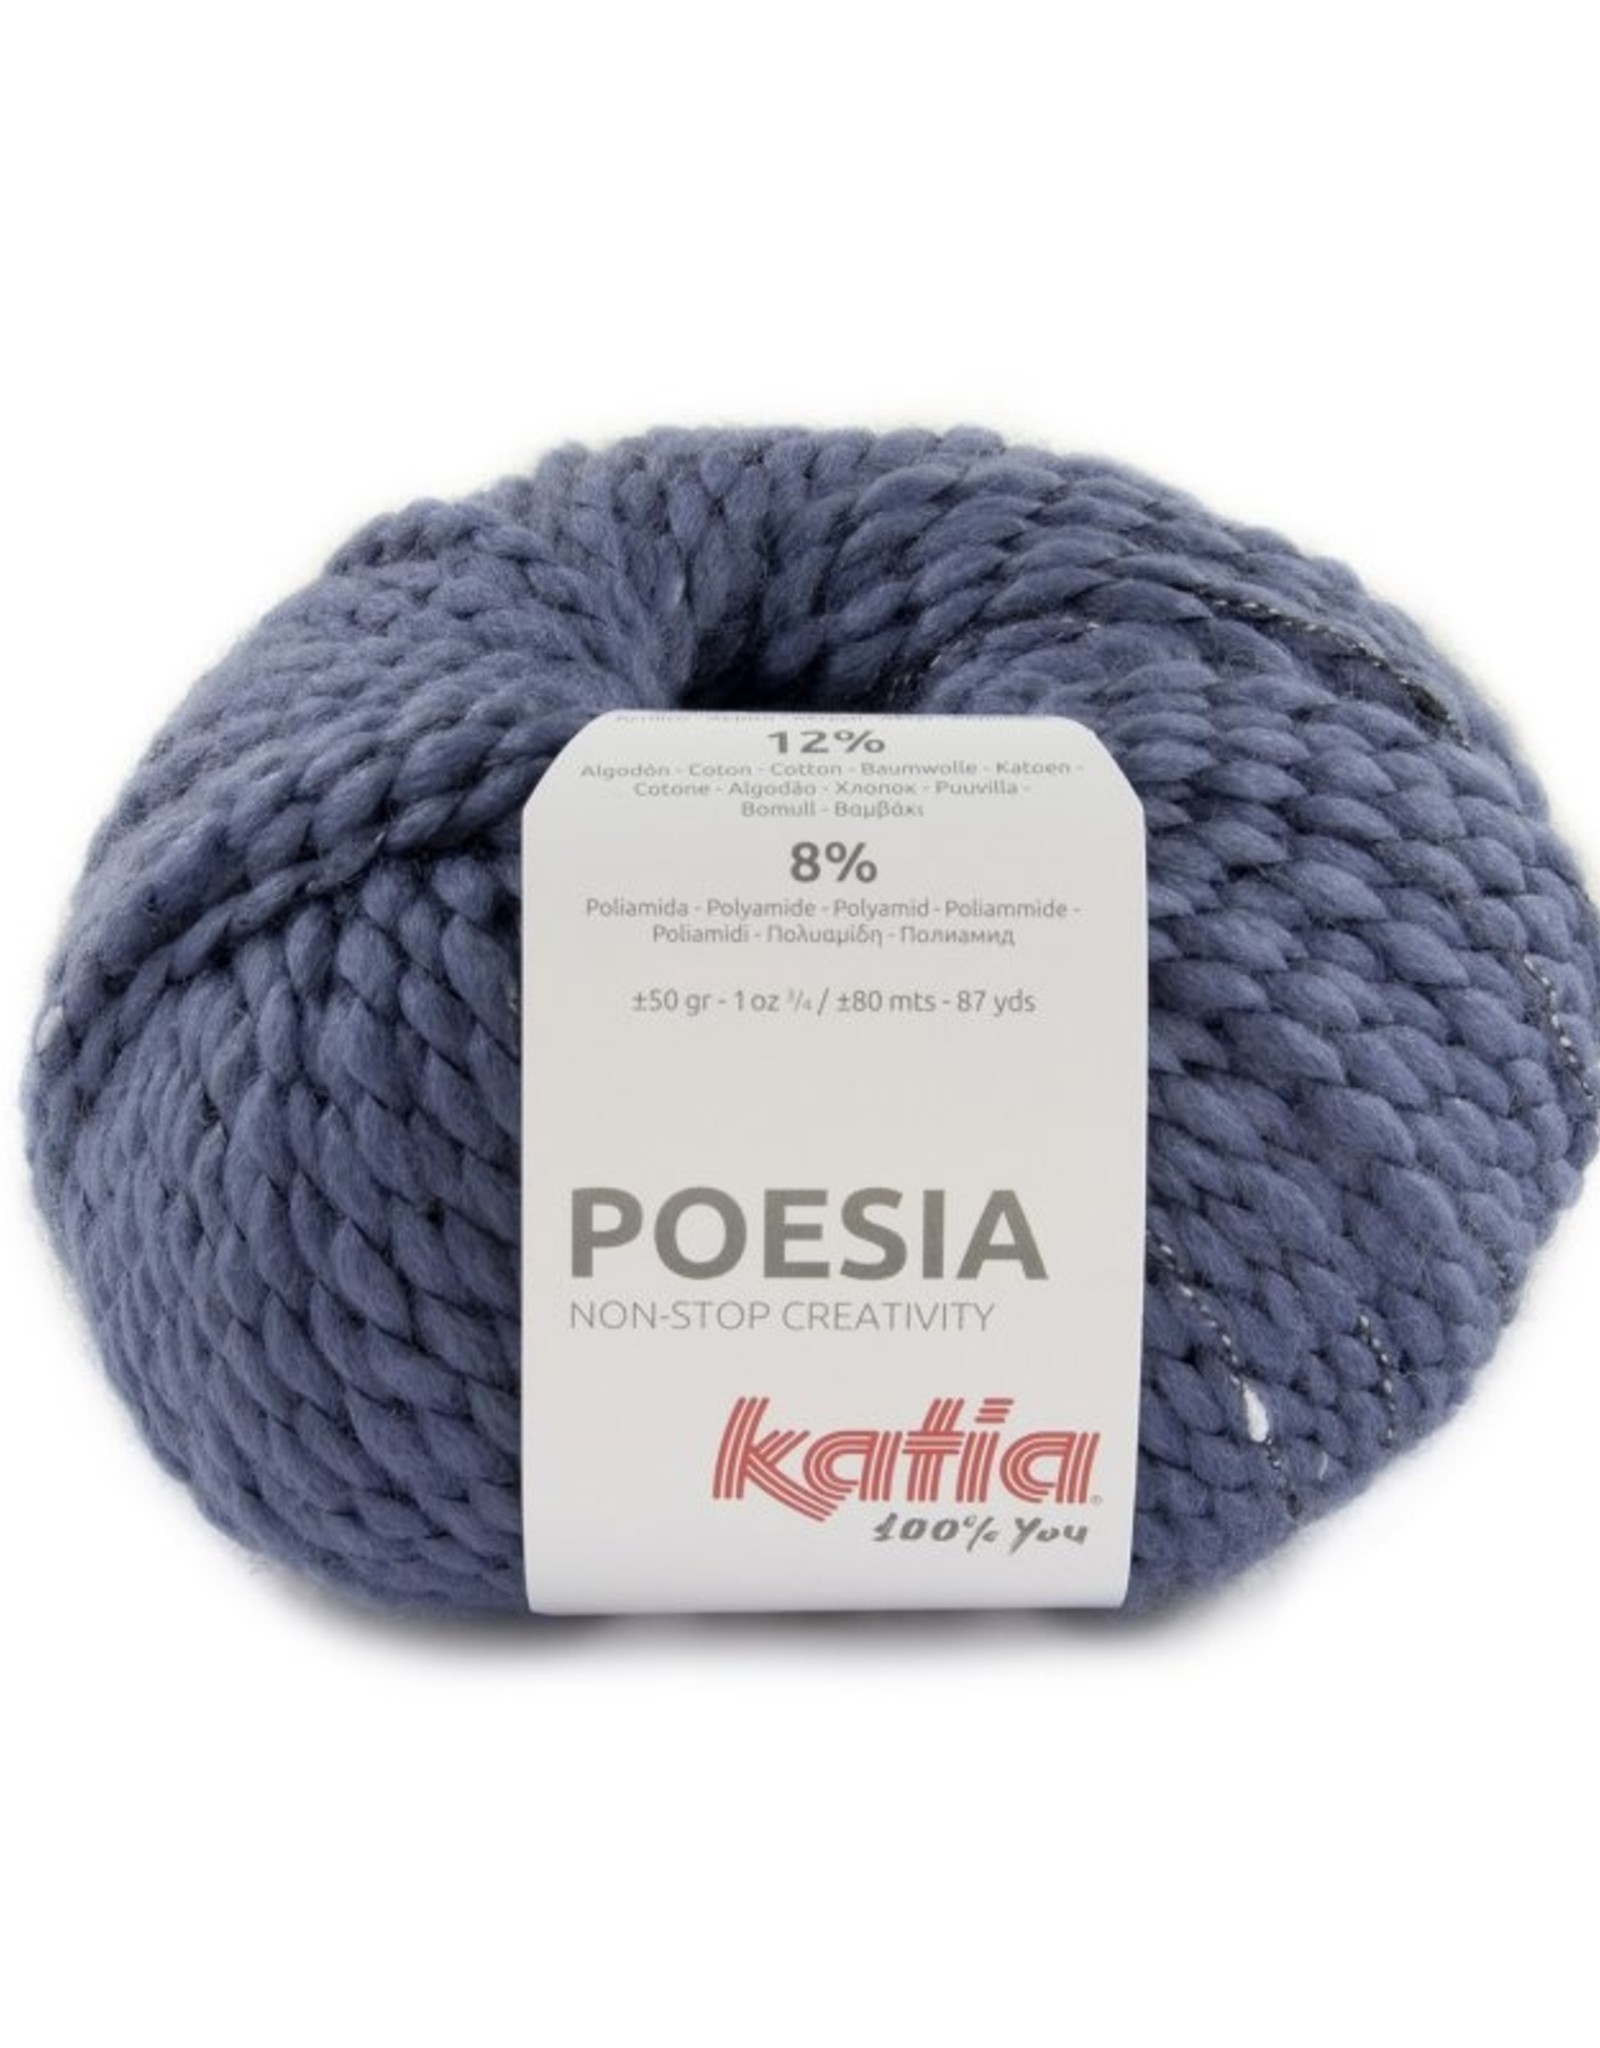 Katia PpGebreide trui met vlechten van het poesia garen